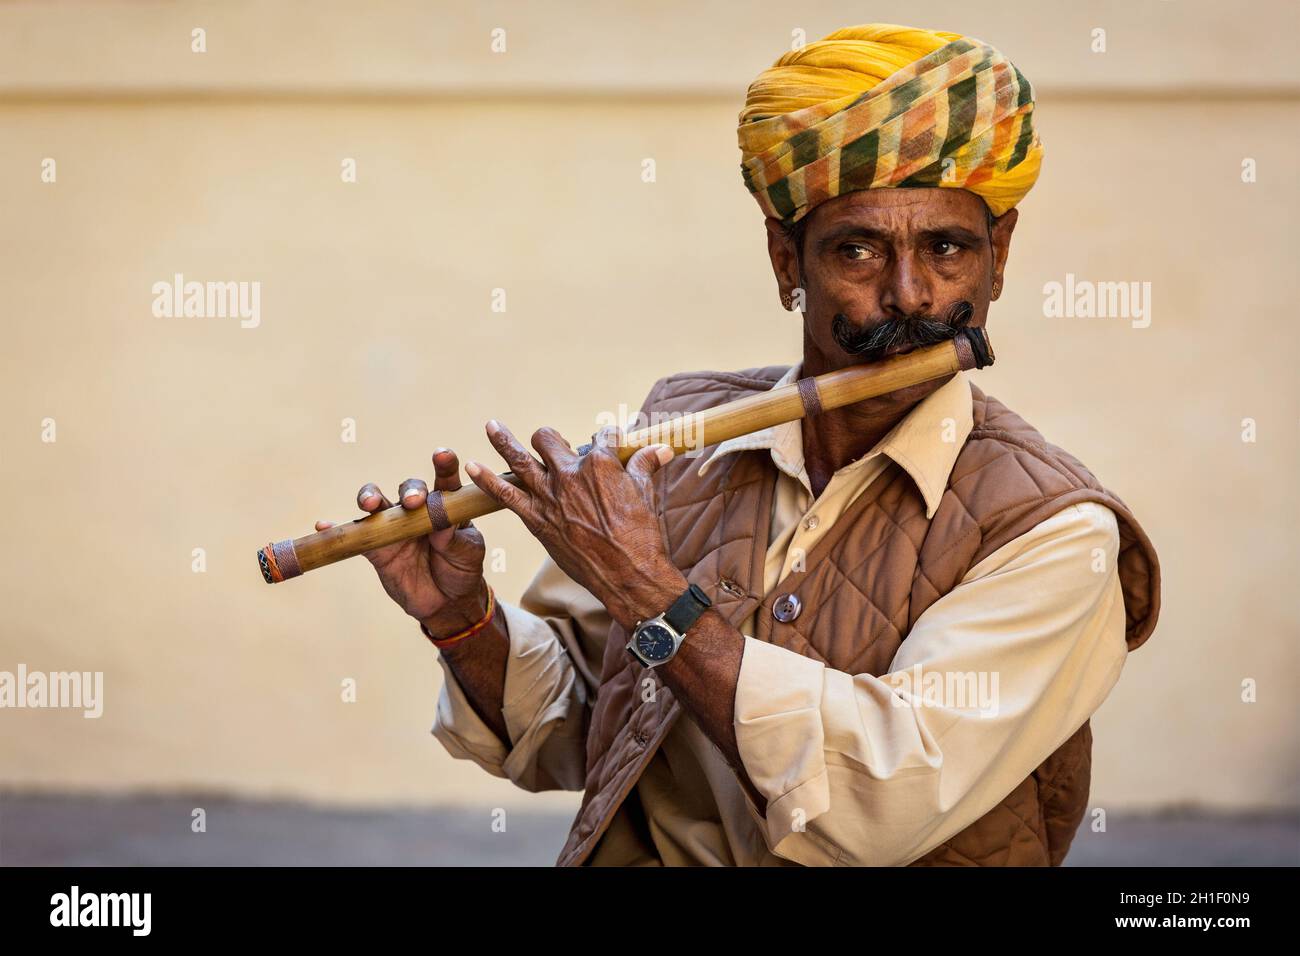 JODHPUR, INDIA - 26 NOVEMBRE 2012: L'uomo indiano gioca flauto di legno nel forte di Mehrangarh, Rajashtan, India Foto Stock